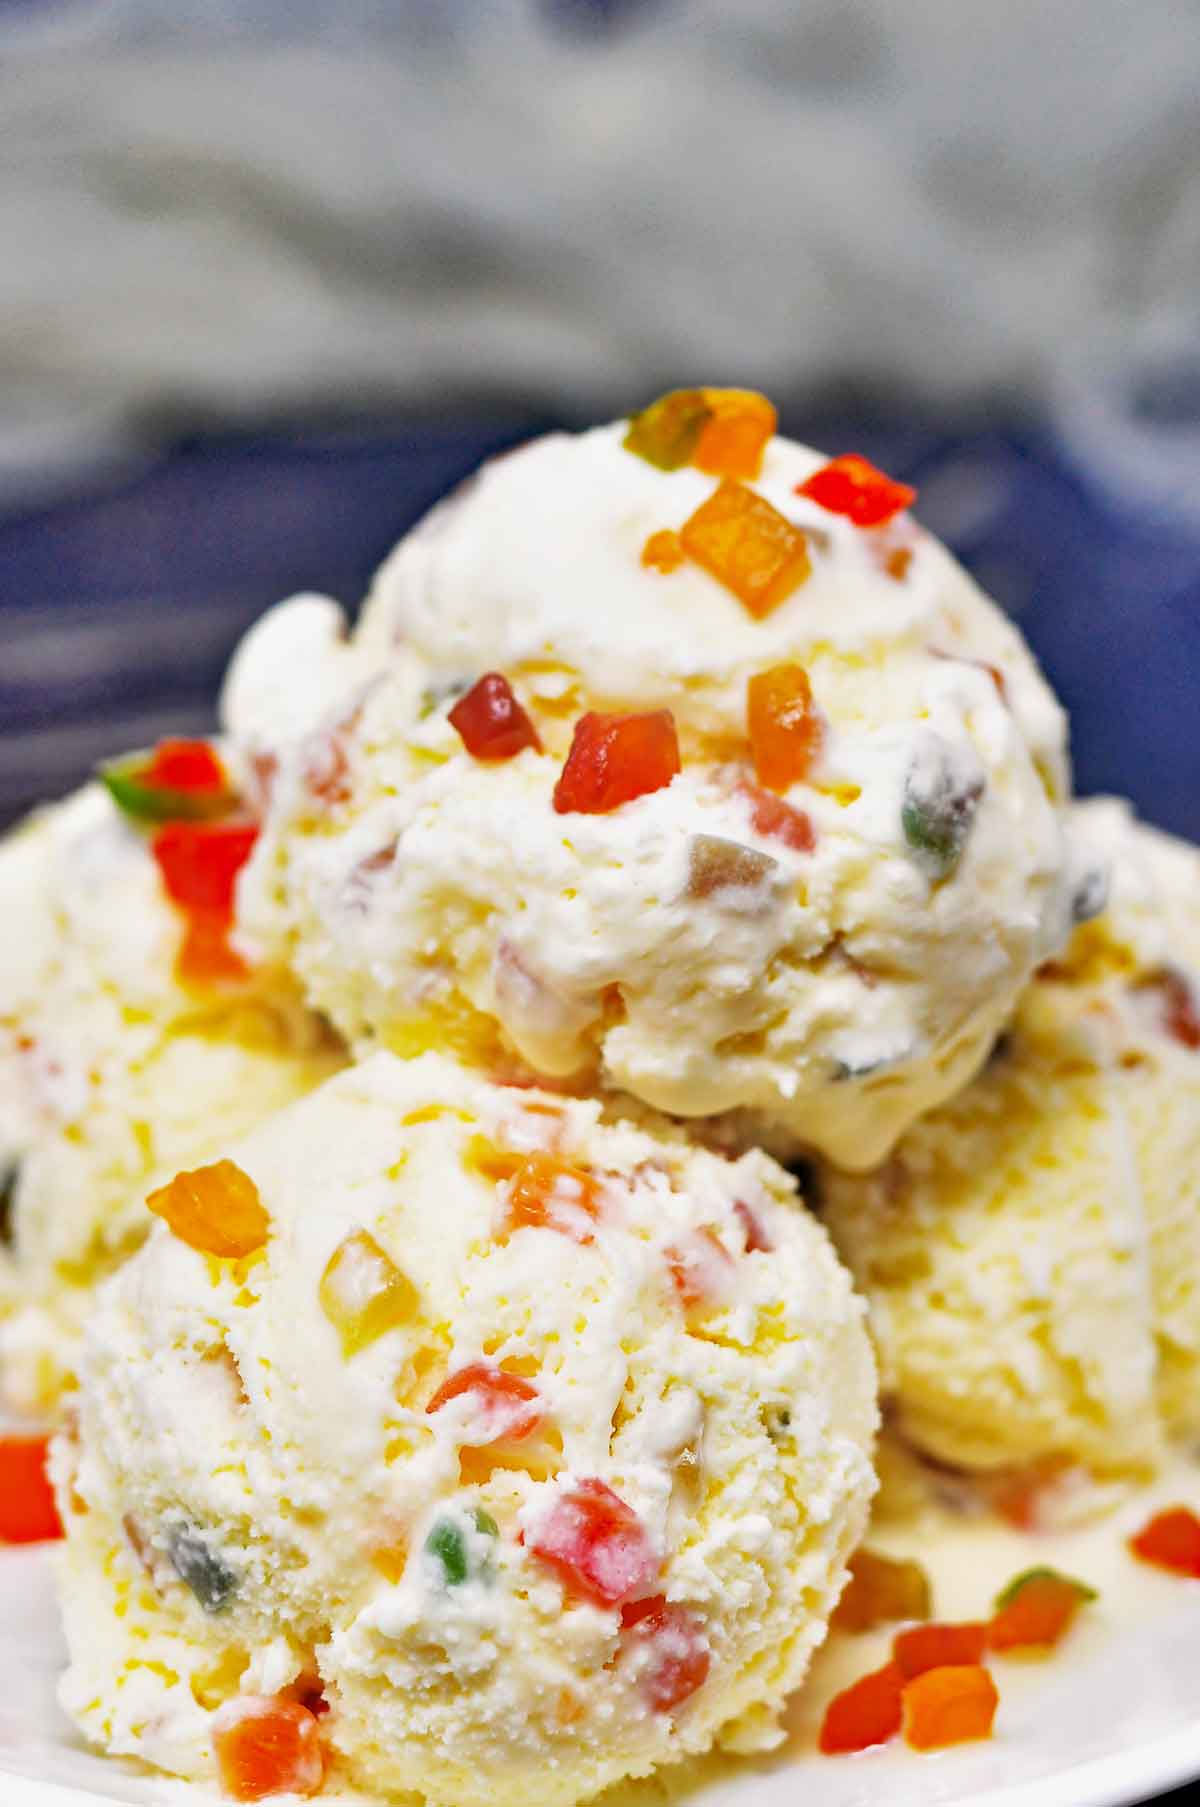 Tutti Frutti Ice Cream » Dassana's Veg Recipes